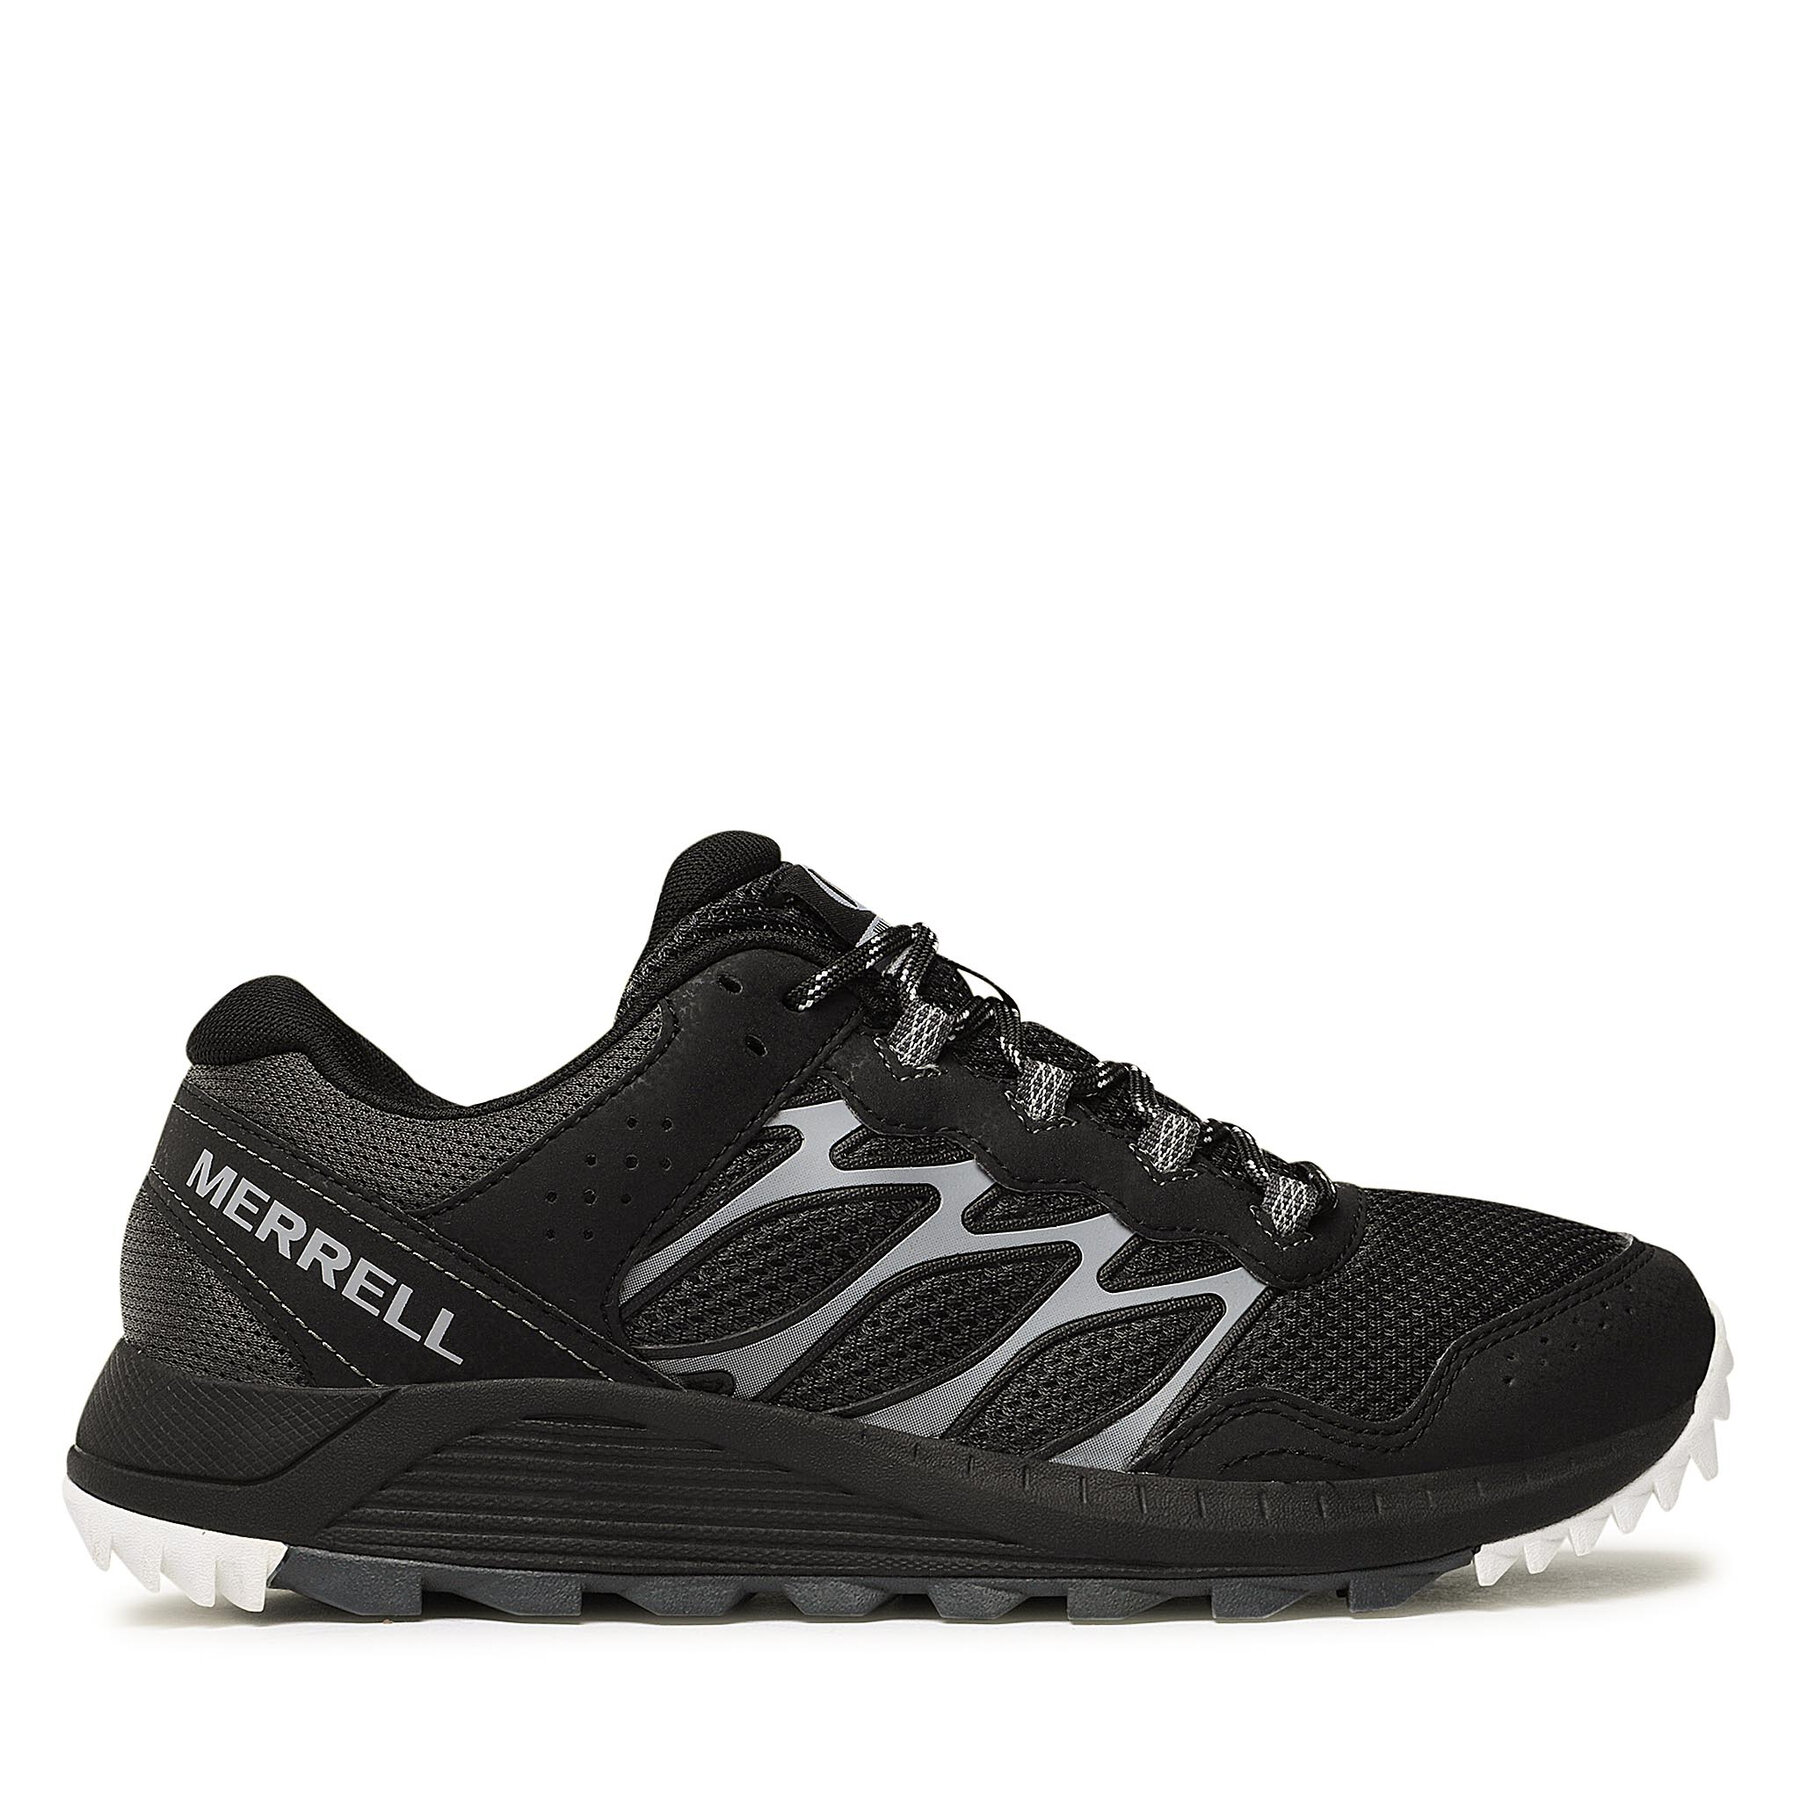 Chaussures de running Merrell Wildwood J135301 Noir